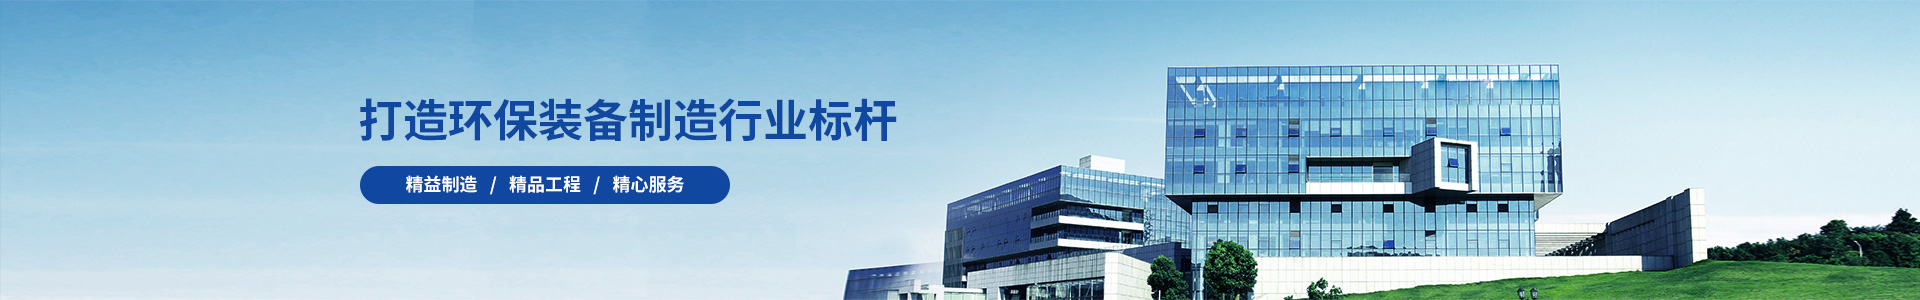 技术团队-江苏大楚生态环境科技有限公司